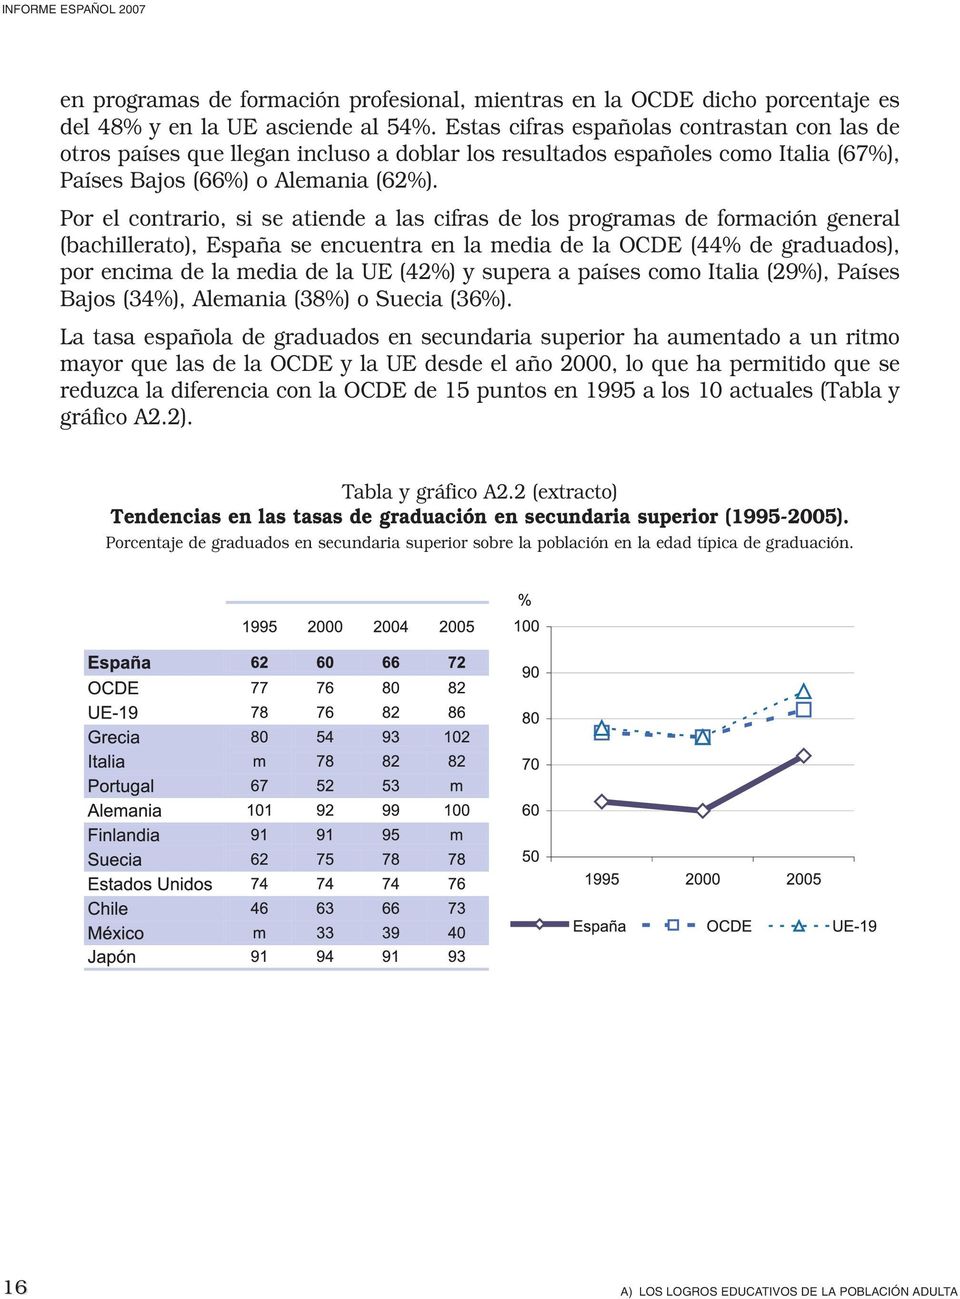 Por el contrario, si se atiende a las cifras de los programas de formación general (bachillerato), España se encuentra en la media de la OCDE (44% de graduados), por encima de la media de la UE (42%)